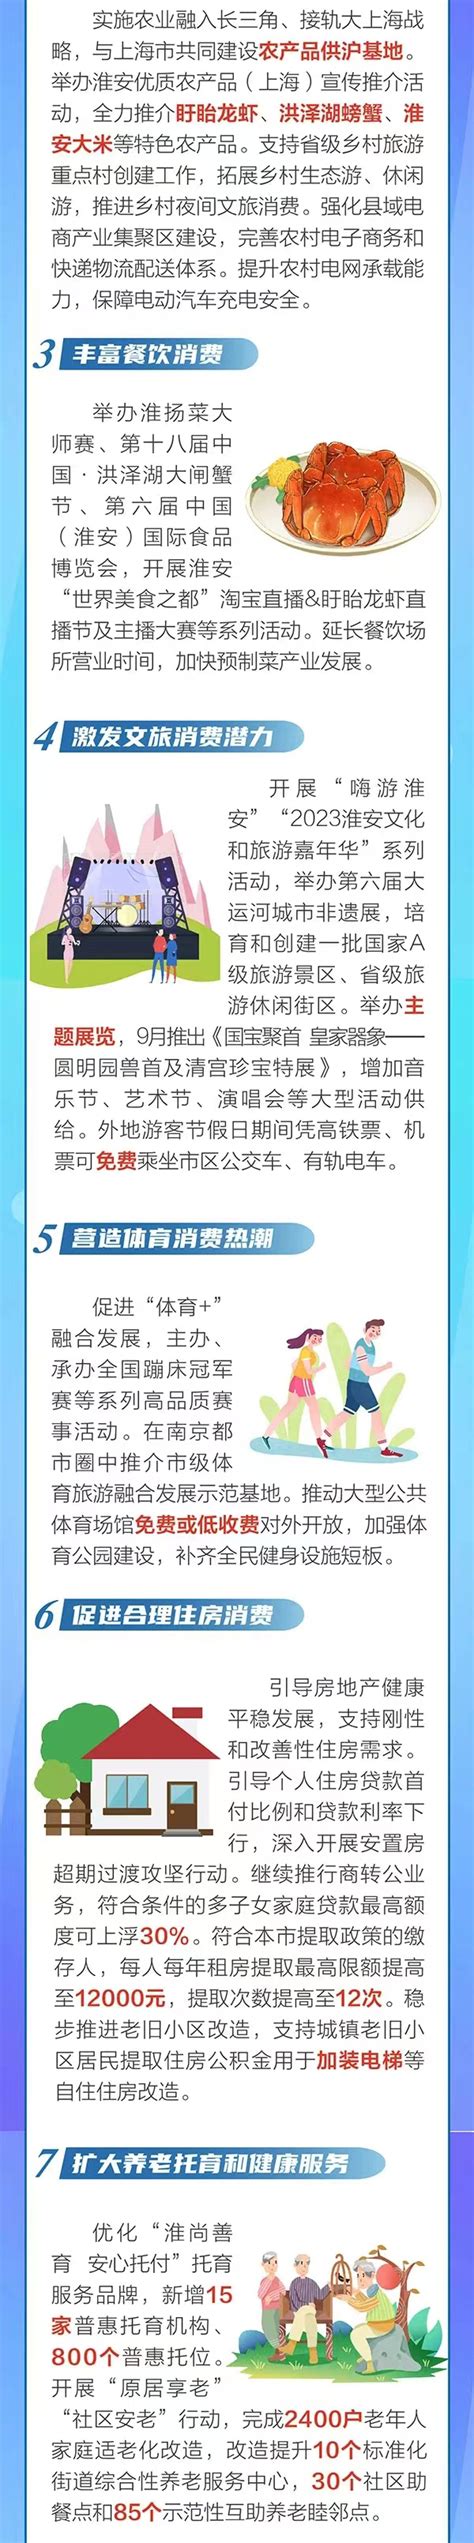 江苏省淮安市2021年度消费维权典型案例-中国质量新闻网